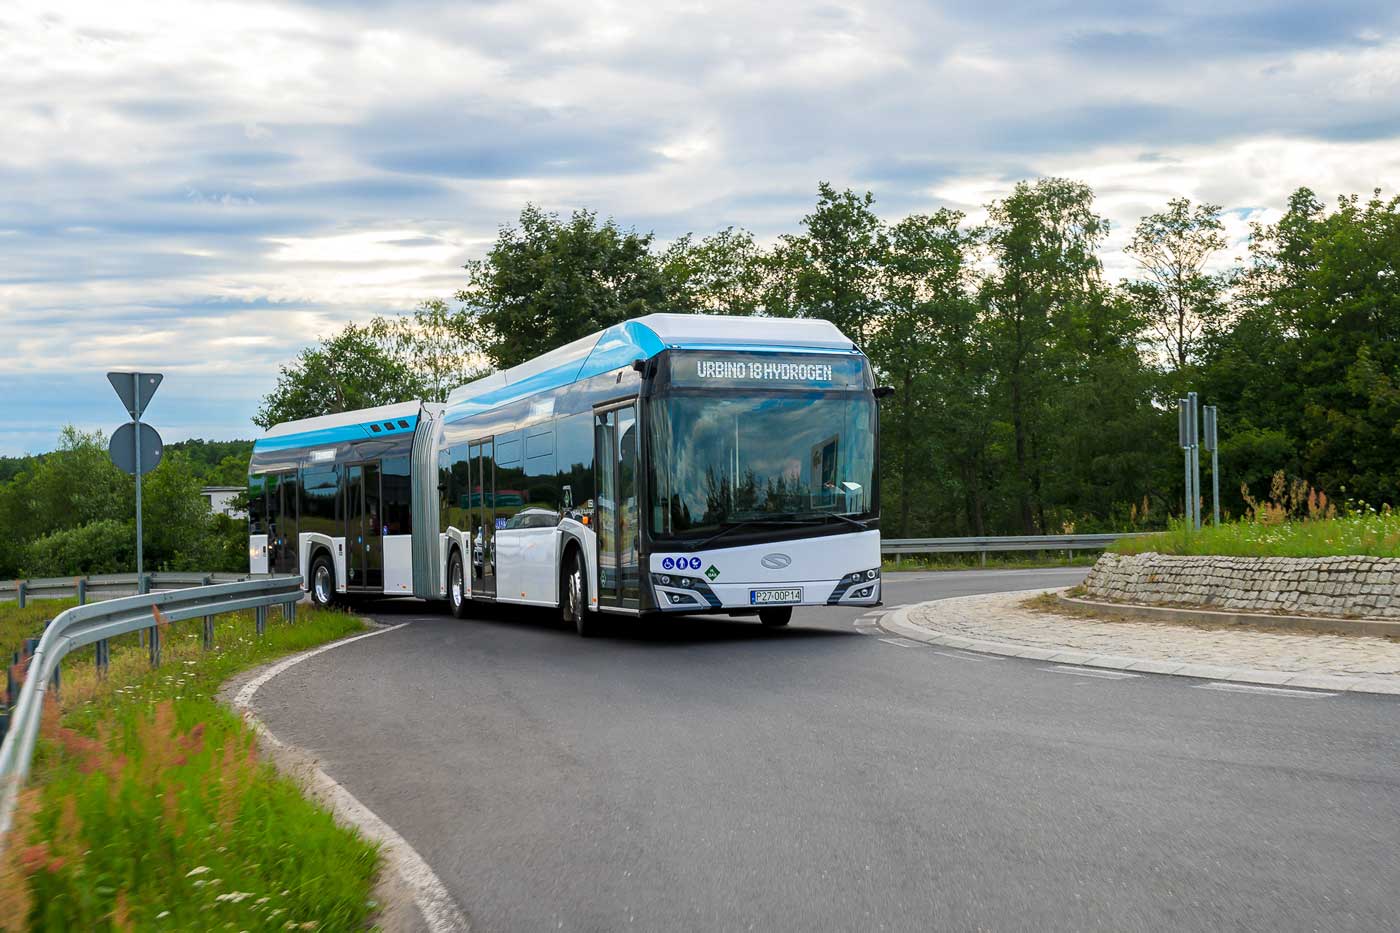 Urbino 18 : Solaris dévoile son bus articulé à hydrogène